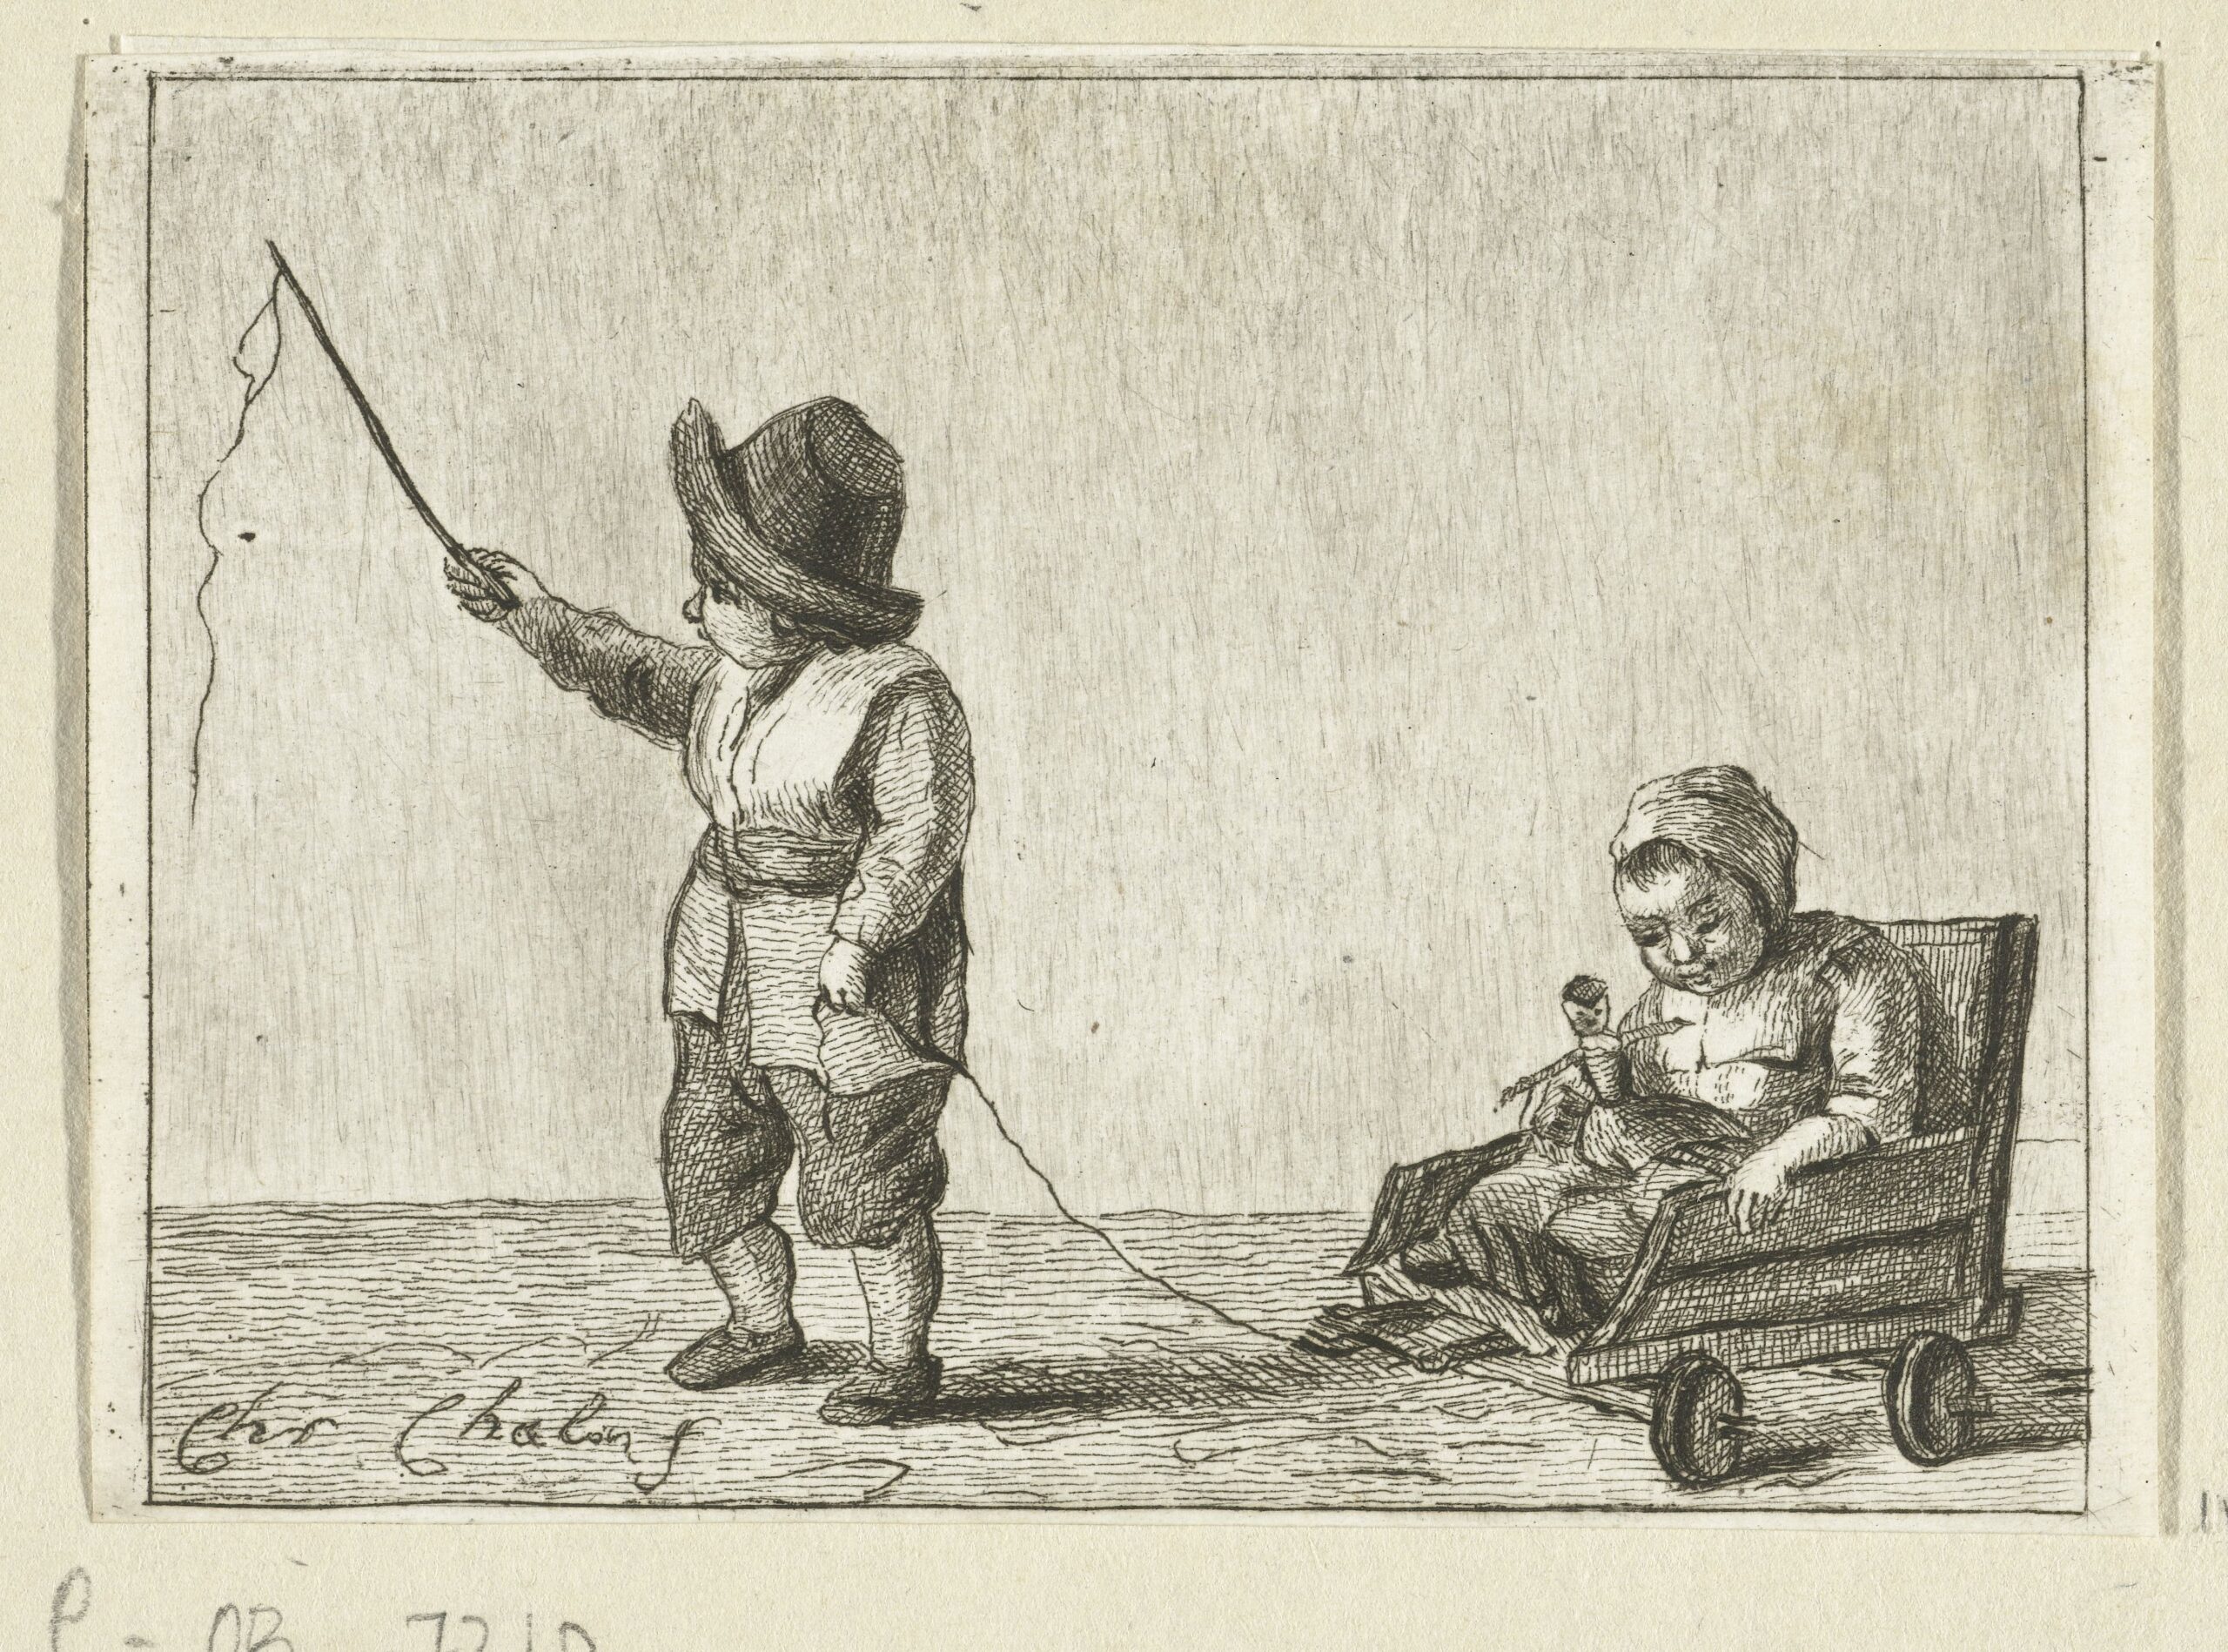 Kuva 1. Pieter de Maren vuosille 1777–1779 ajoitetussa taideteoksessa lasten leikki sujuu turvallisissa merkeissä. Kuvalähde: http://hdl.handle.net/10934/RM0001.COLLECT.91704